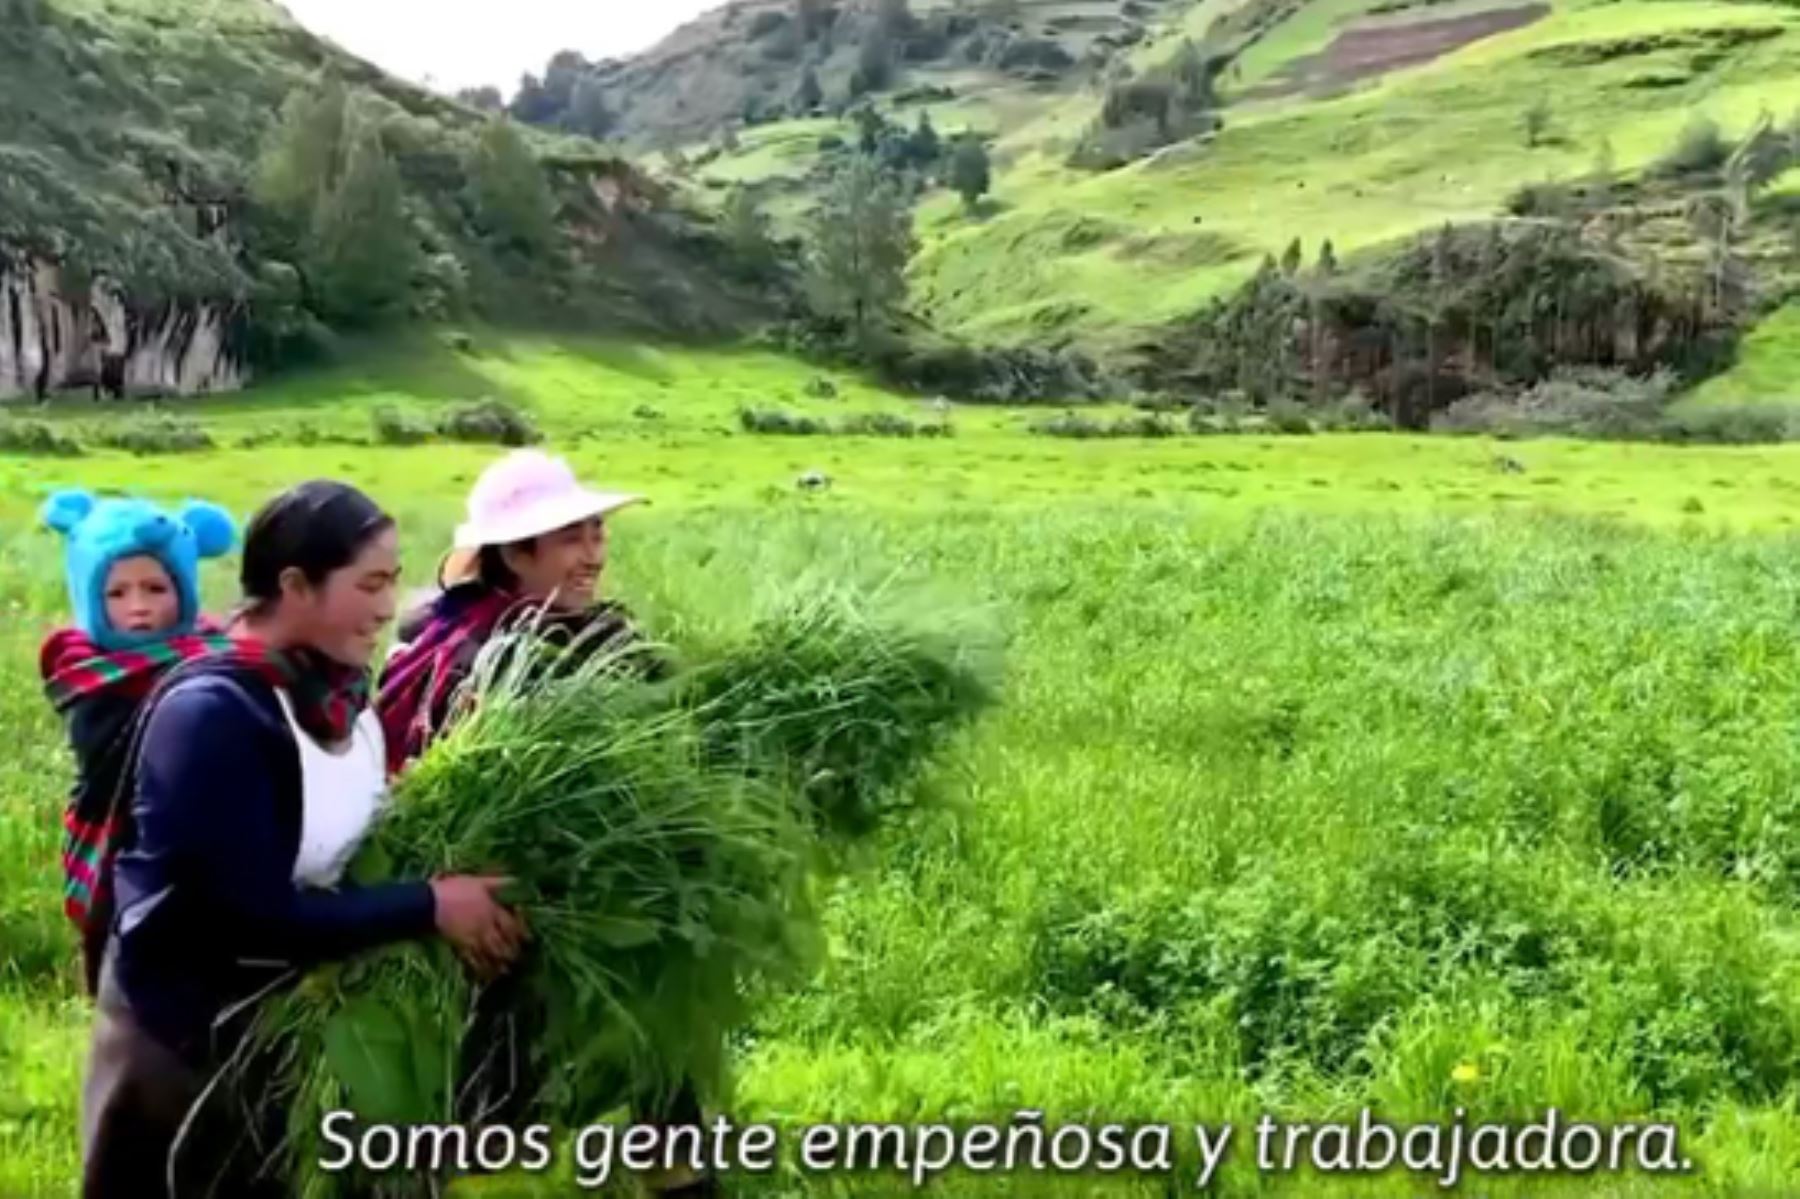 El material audiovisual forma parte de la campaña nacional Peruanos Naturalmente del Ministerio del Ambiente. Foto: ANDINA/Minam